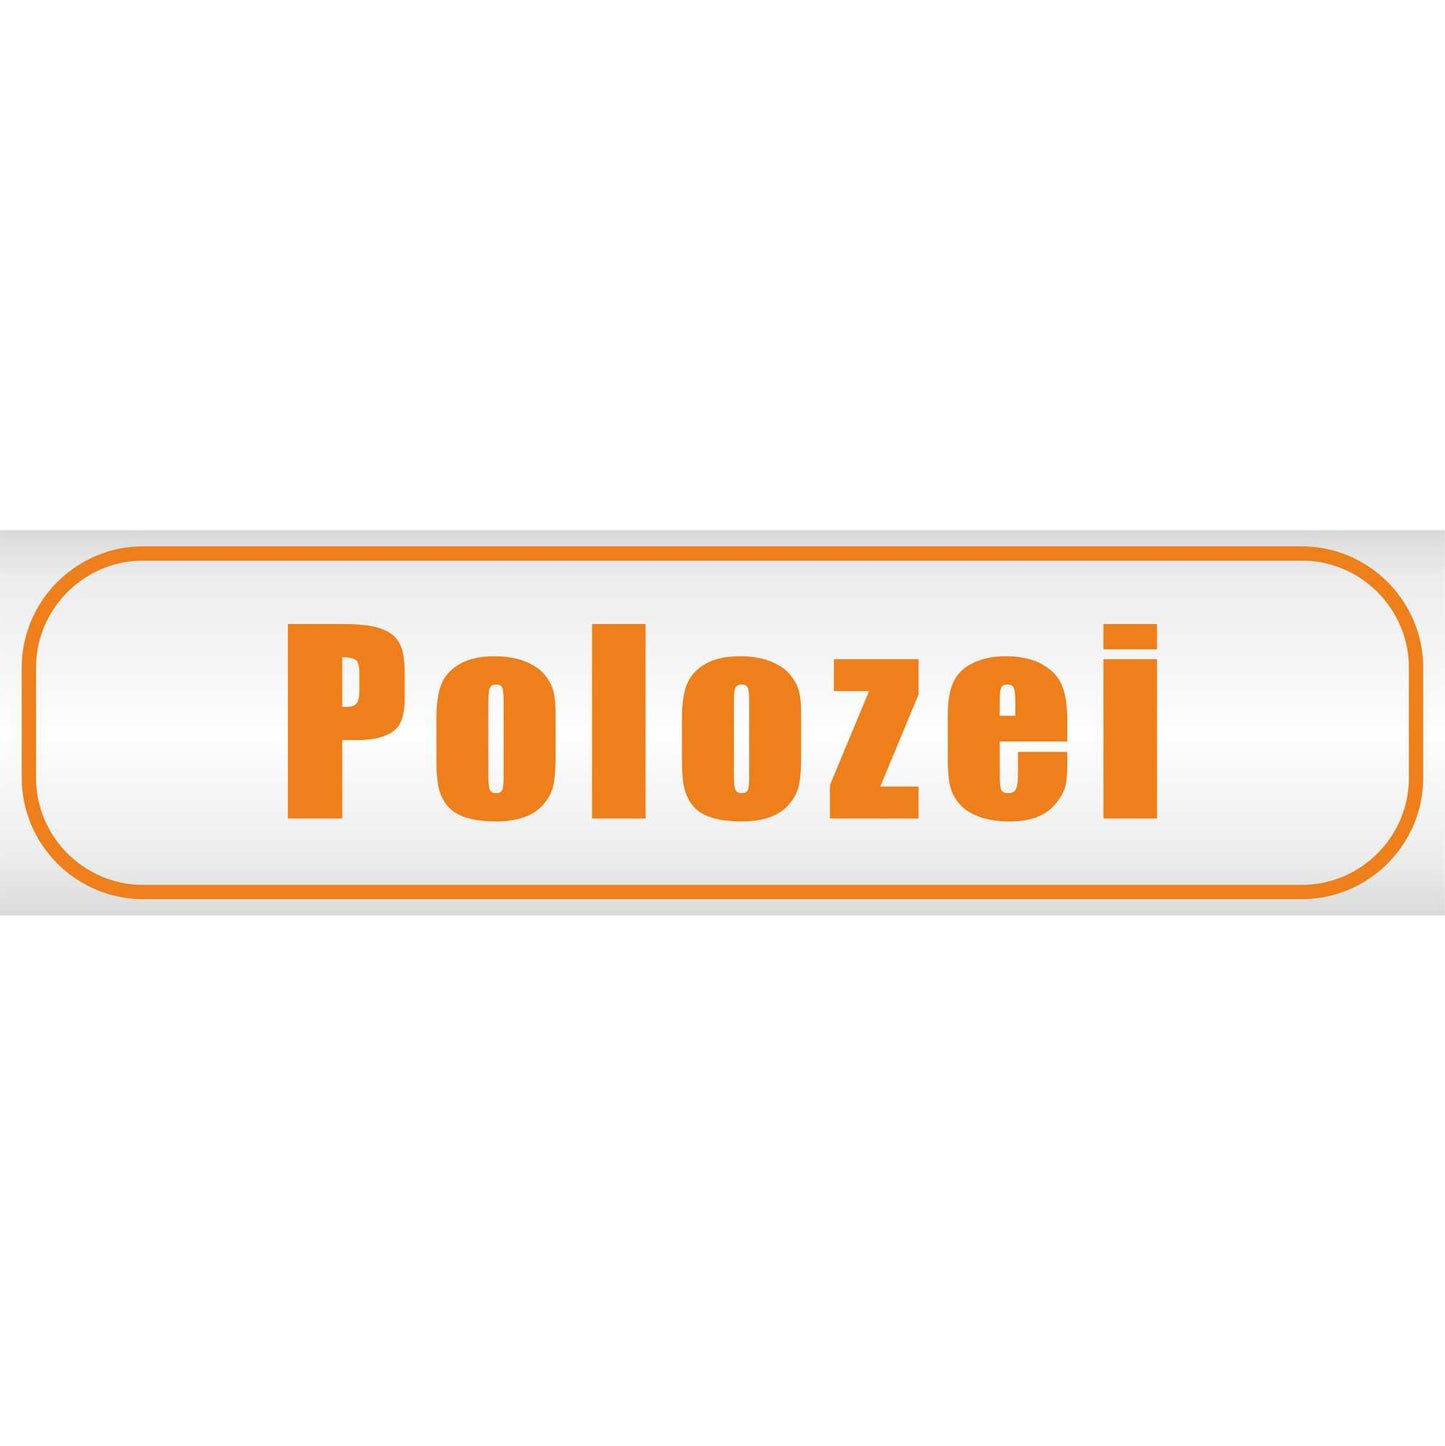 Magnetschild - Polozei - Magnetfolie für Auto - LKW - Truck - Baustelle - Firma